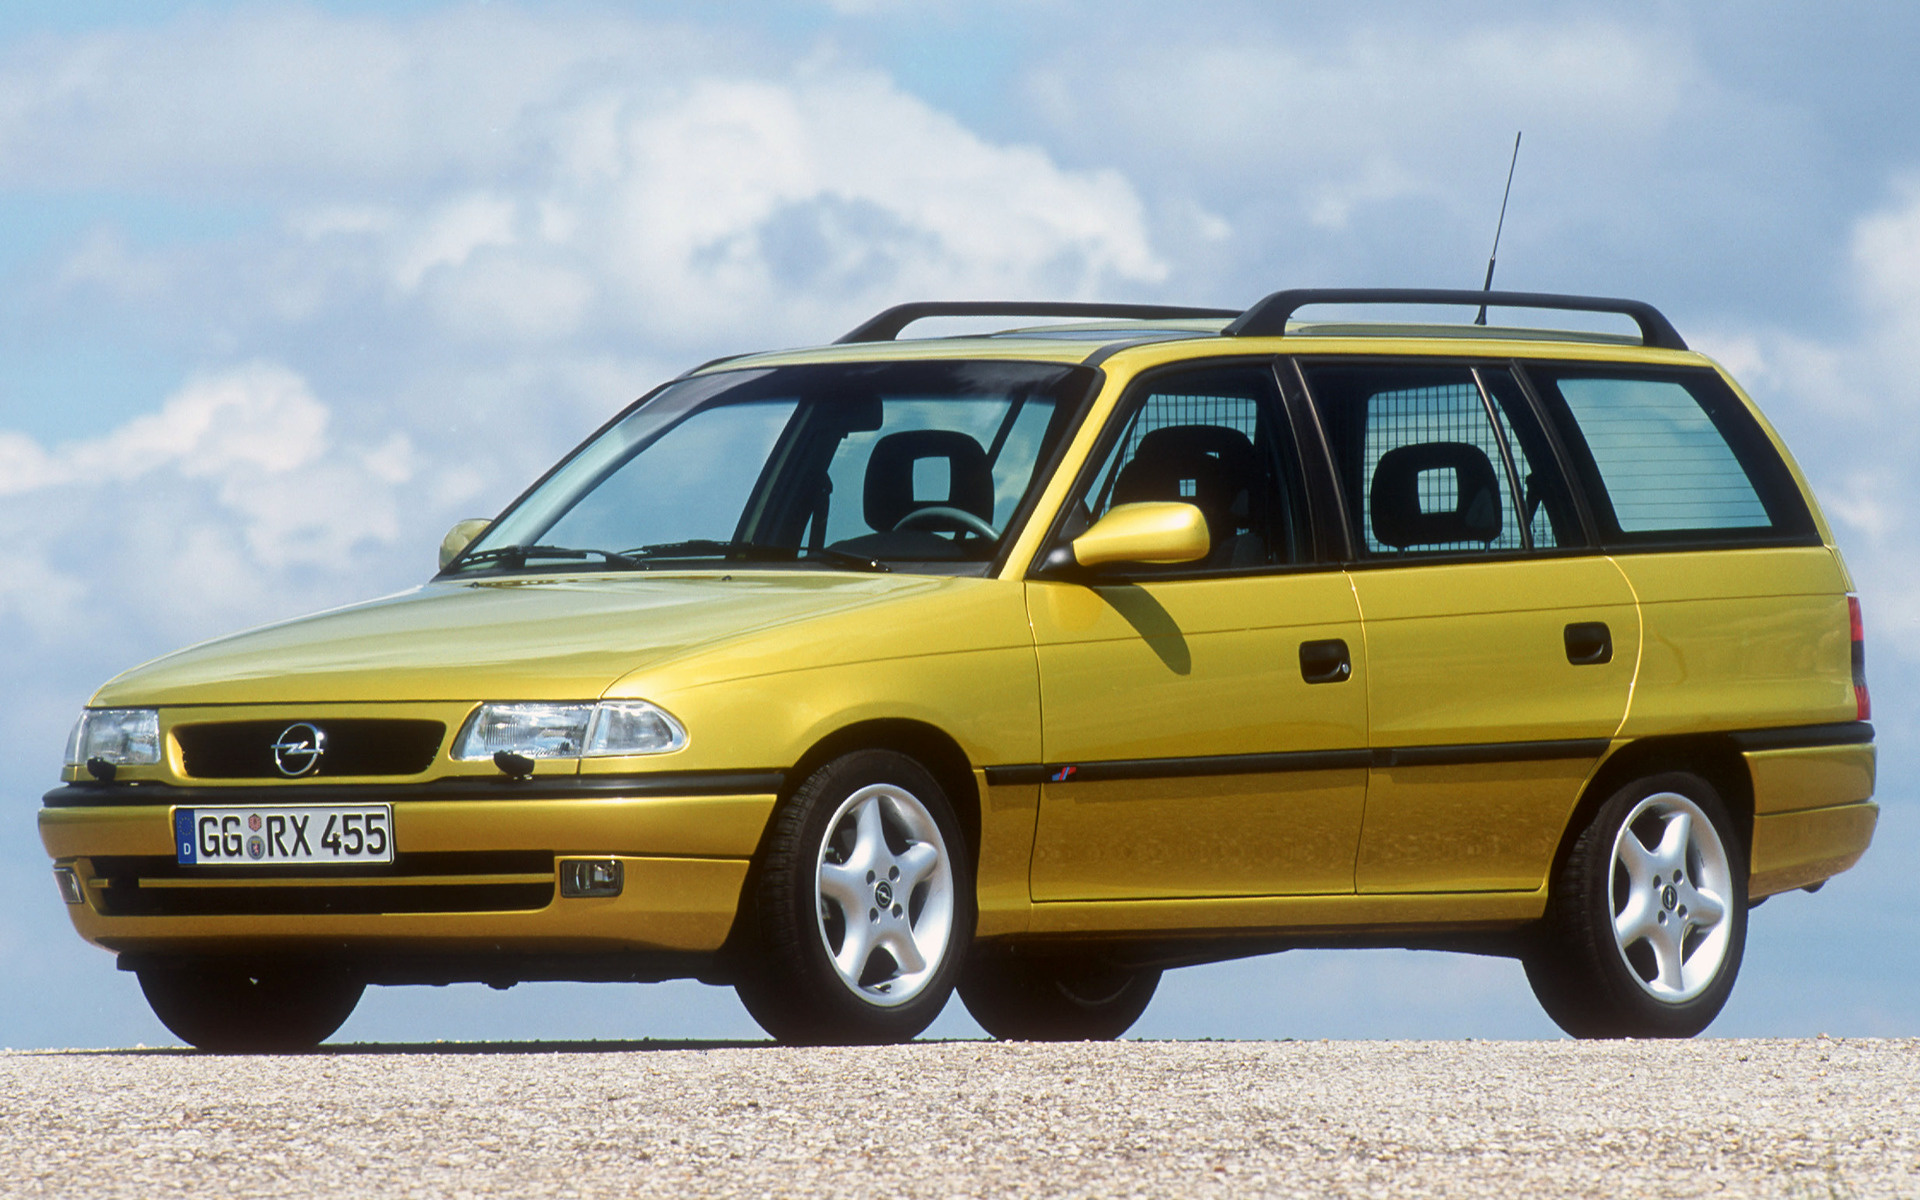 Опель универсал f. Opel Astra Caravan 1996. Opel Astra f 1995 универсал. Opel Astra f 1997 универсал. Opel Astra Caravan универсал 1997.